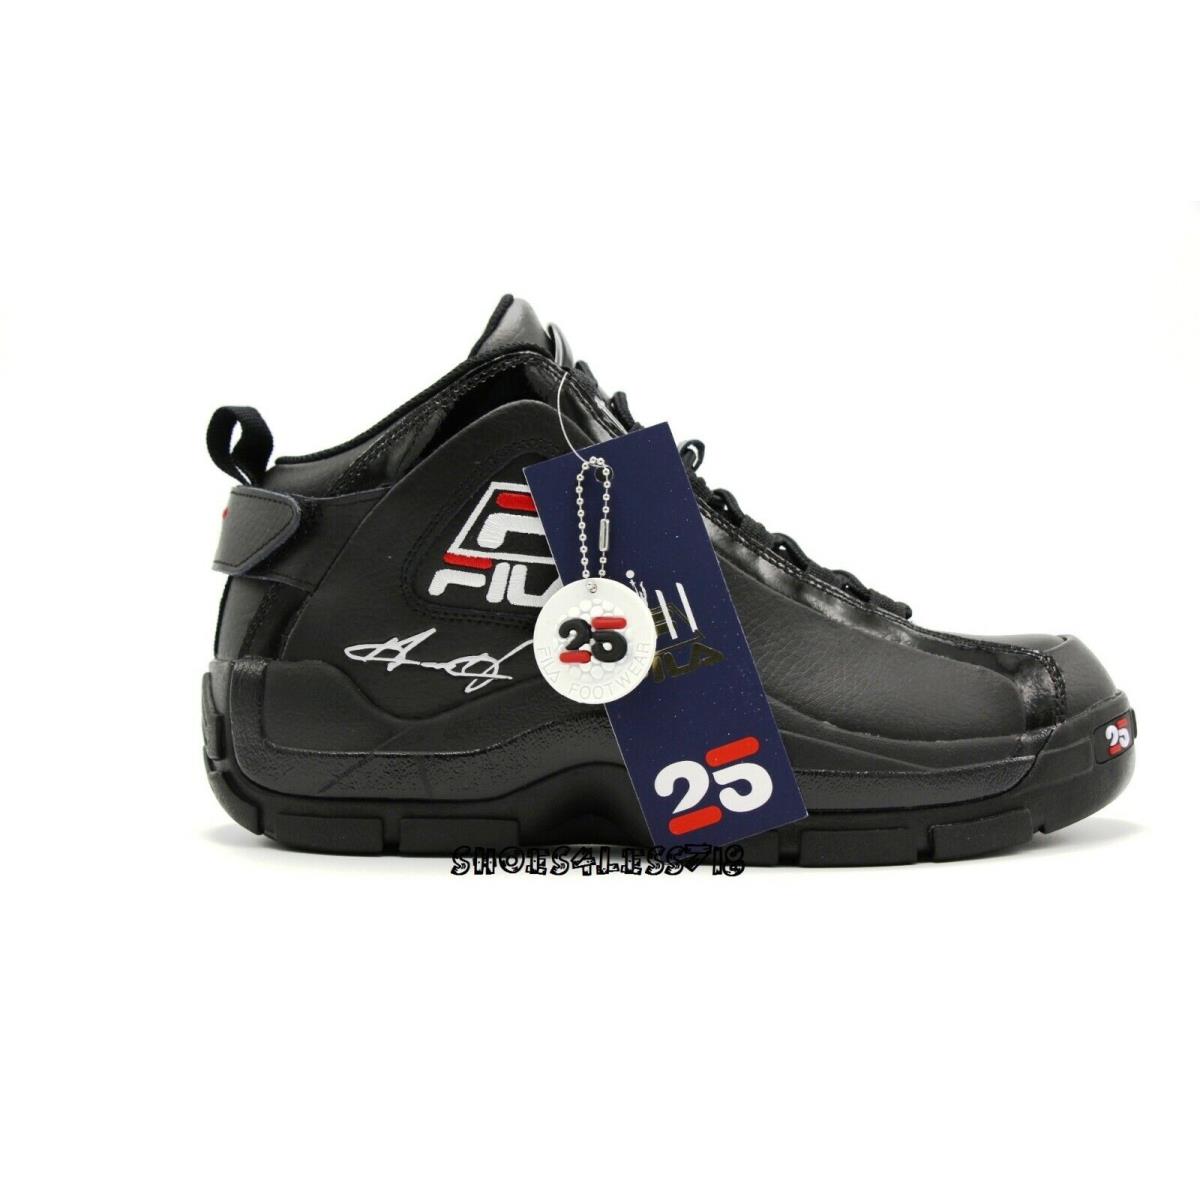 Fila Grant Hill 2 25th Anniversary Black Signature Limited Edition Sneakers